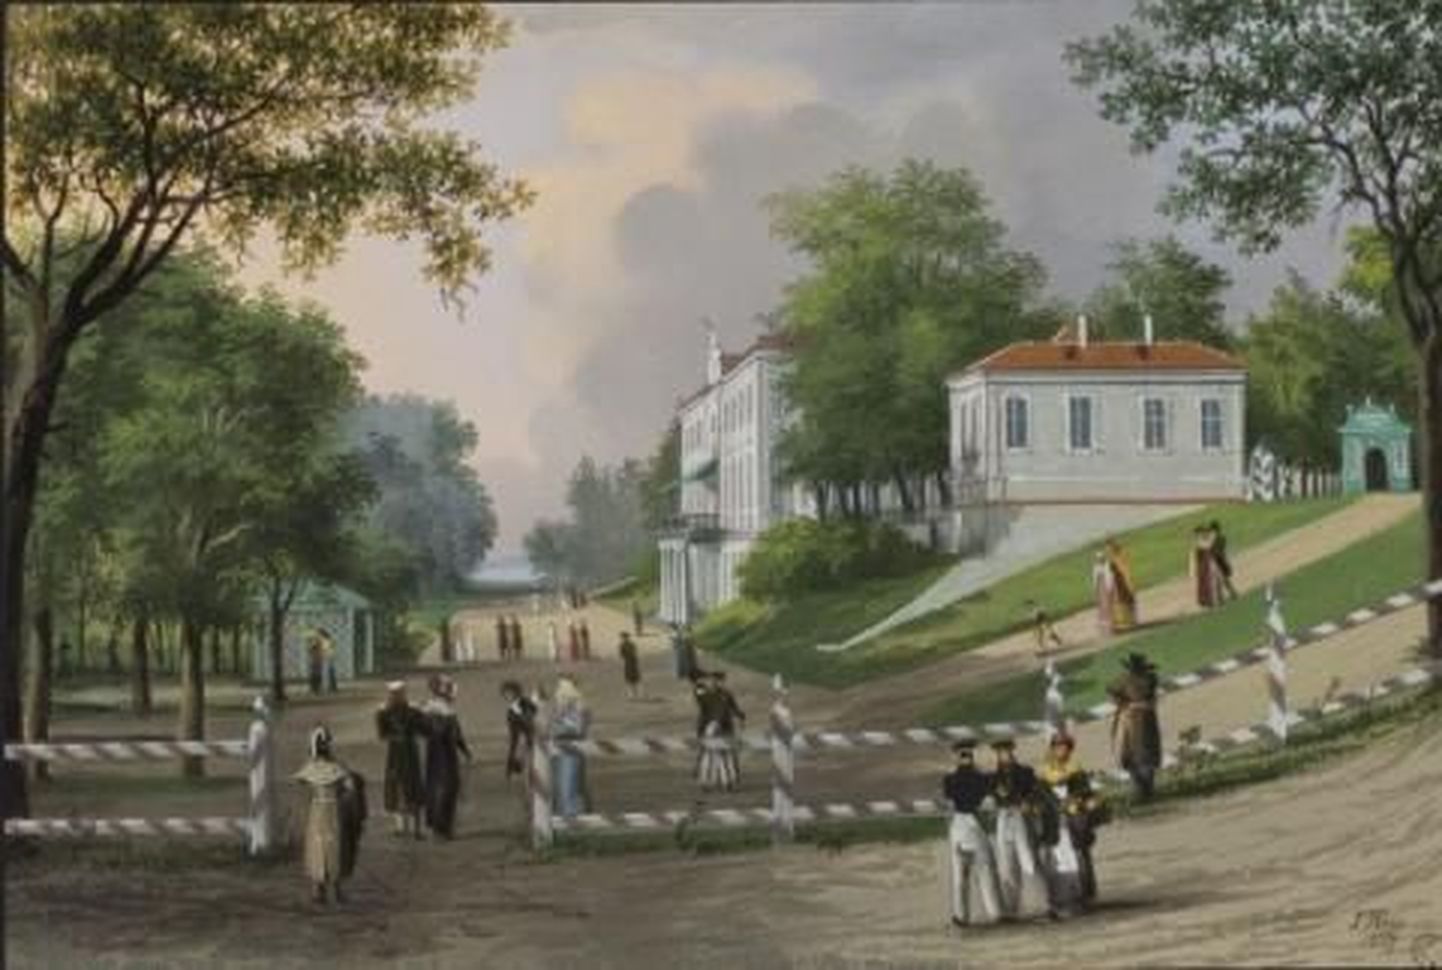 Таким Кадриоргский дворец изобразил Иоганн Хау в первой половине XIX века.